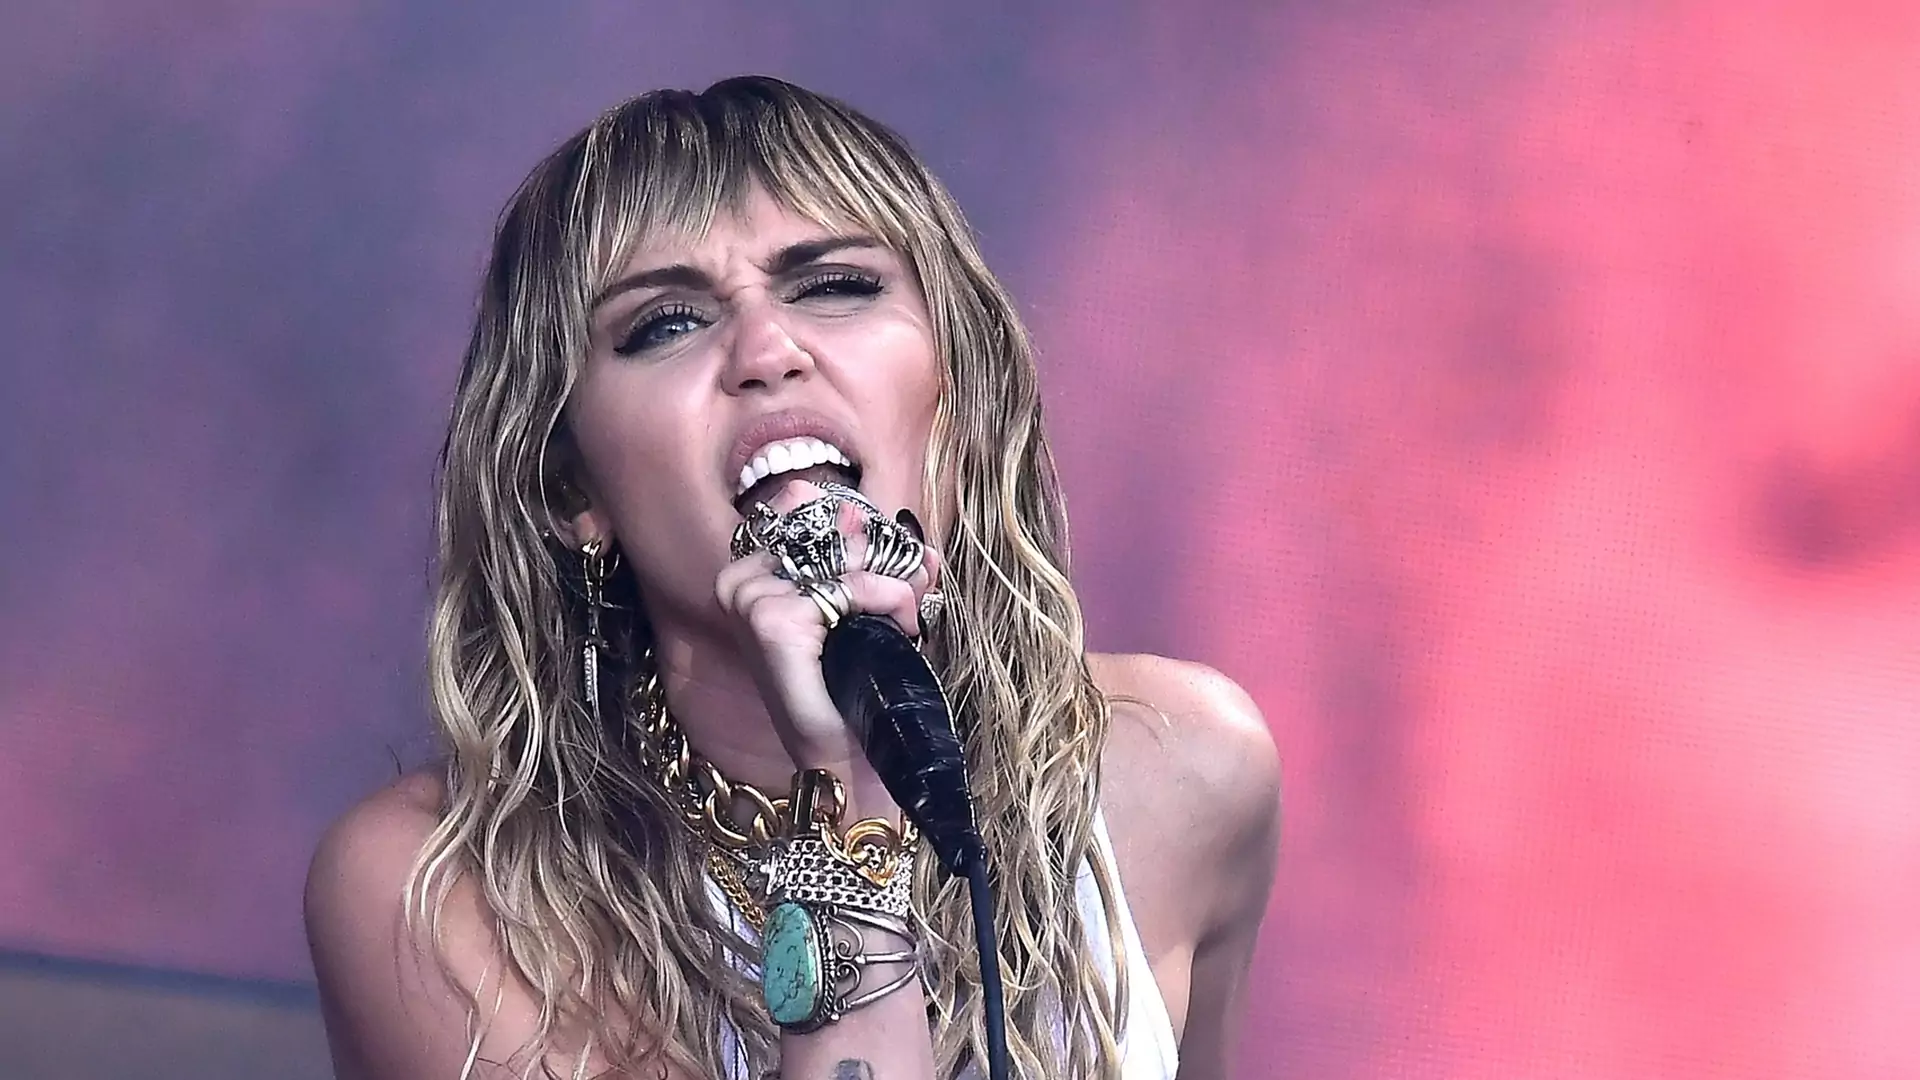 Nowa piosenka Miley Cyrus wyjaśnia powód rozstania z Liamem Hemsworthem?